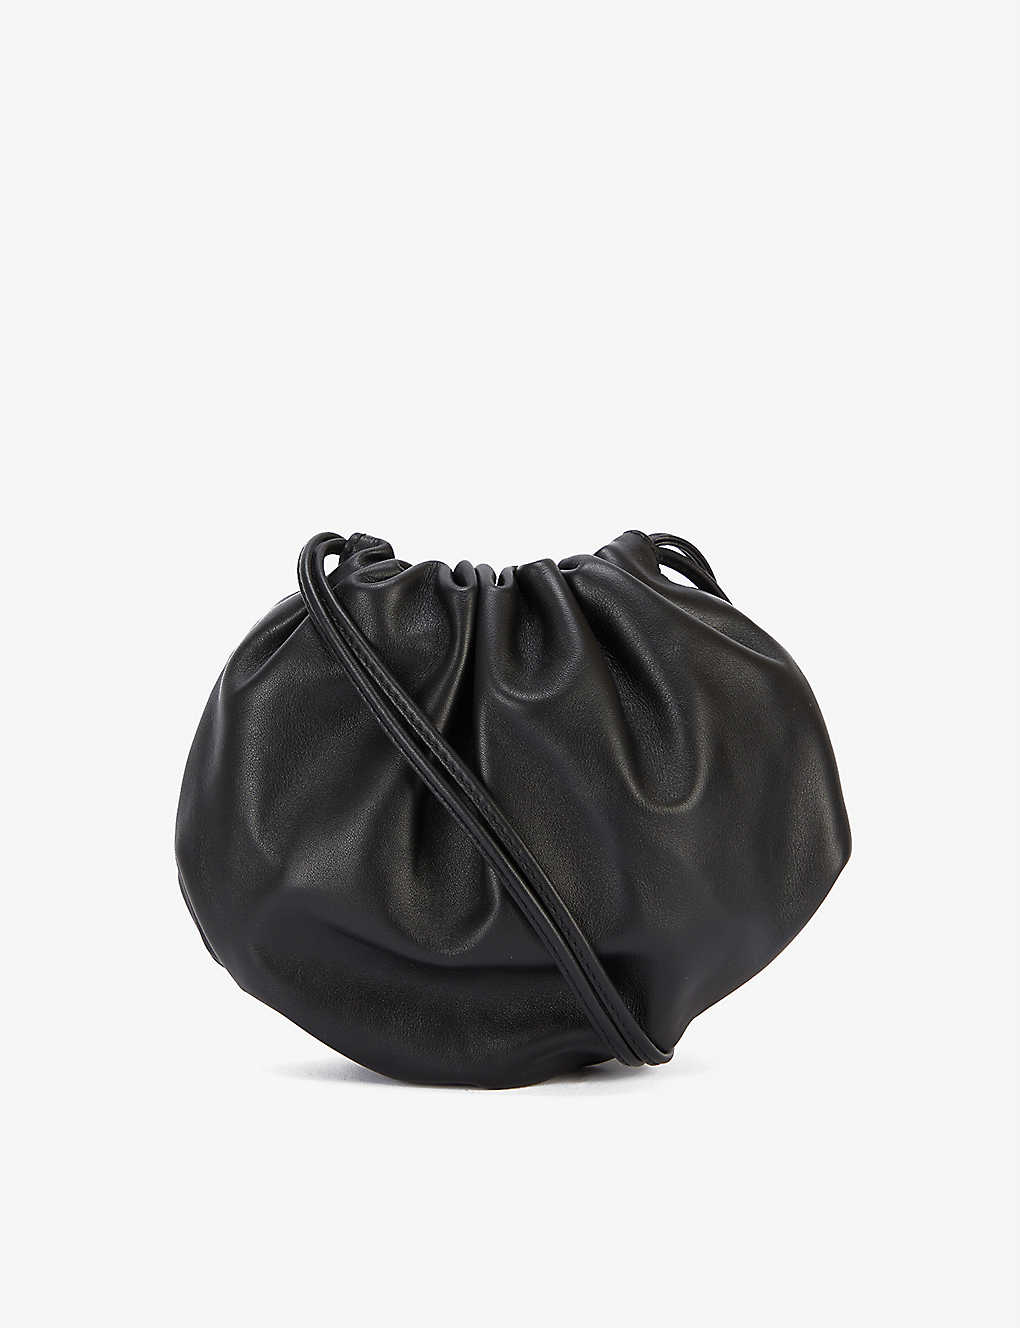 The Mini Bulb leather shoulder bag Selfridges & Co Women Accessories Bags Clutches 